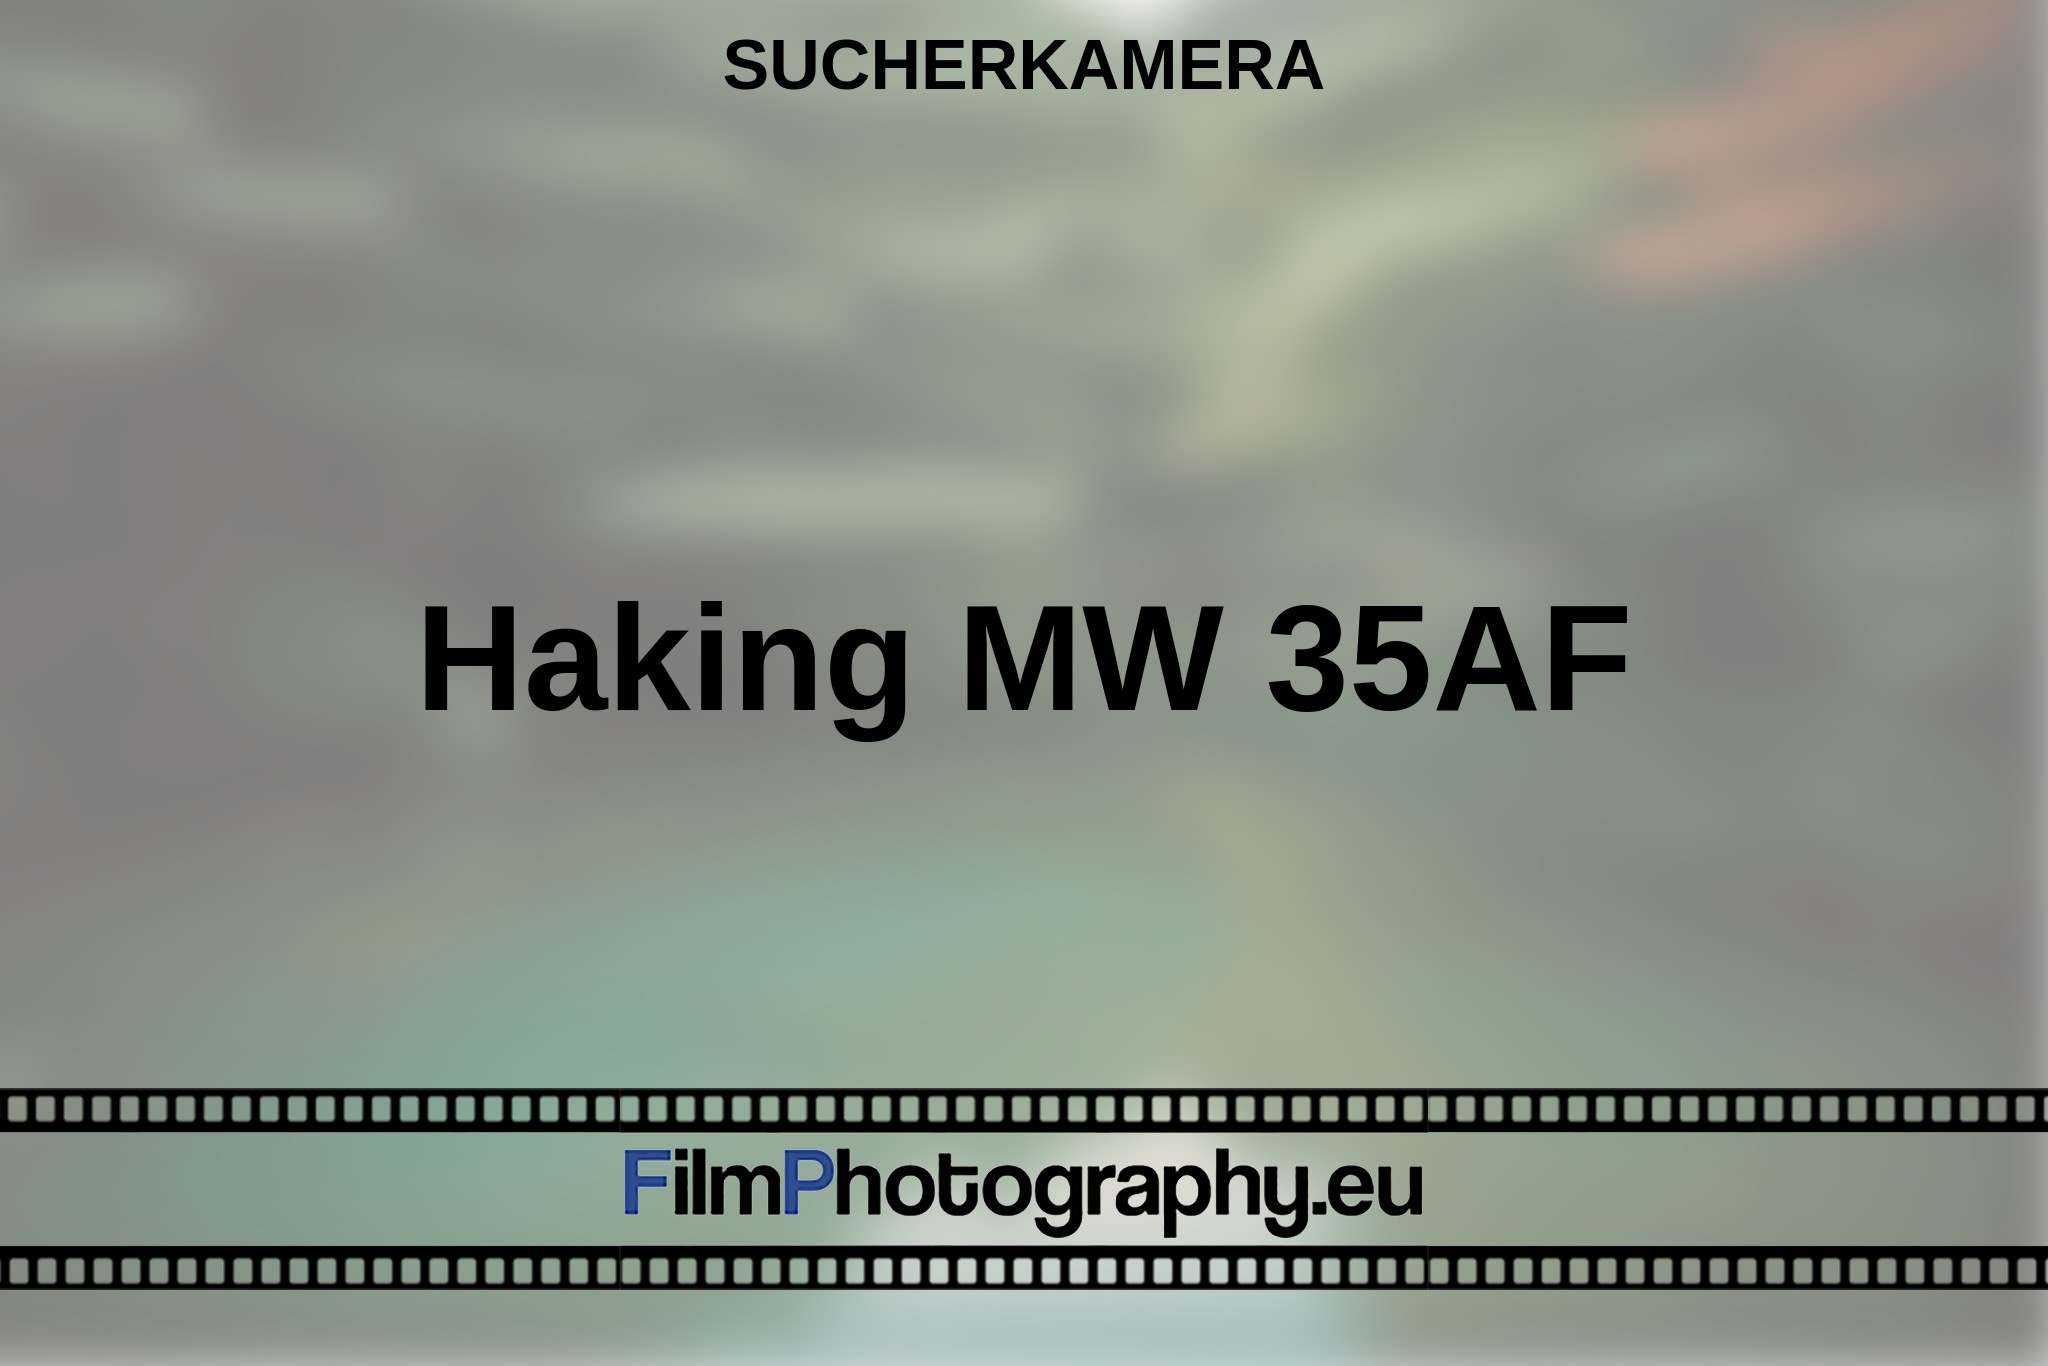 haking-mw-35af-sucherkamera-bnv.jpg